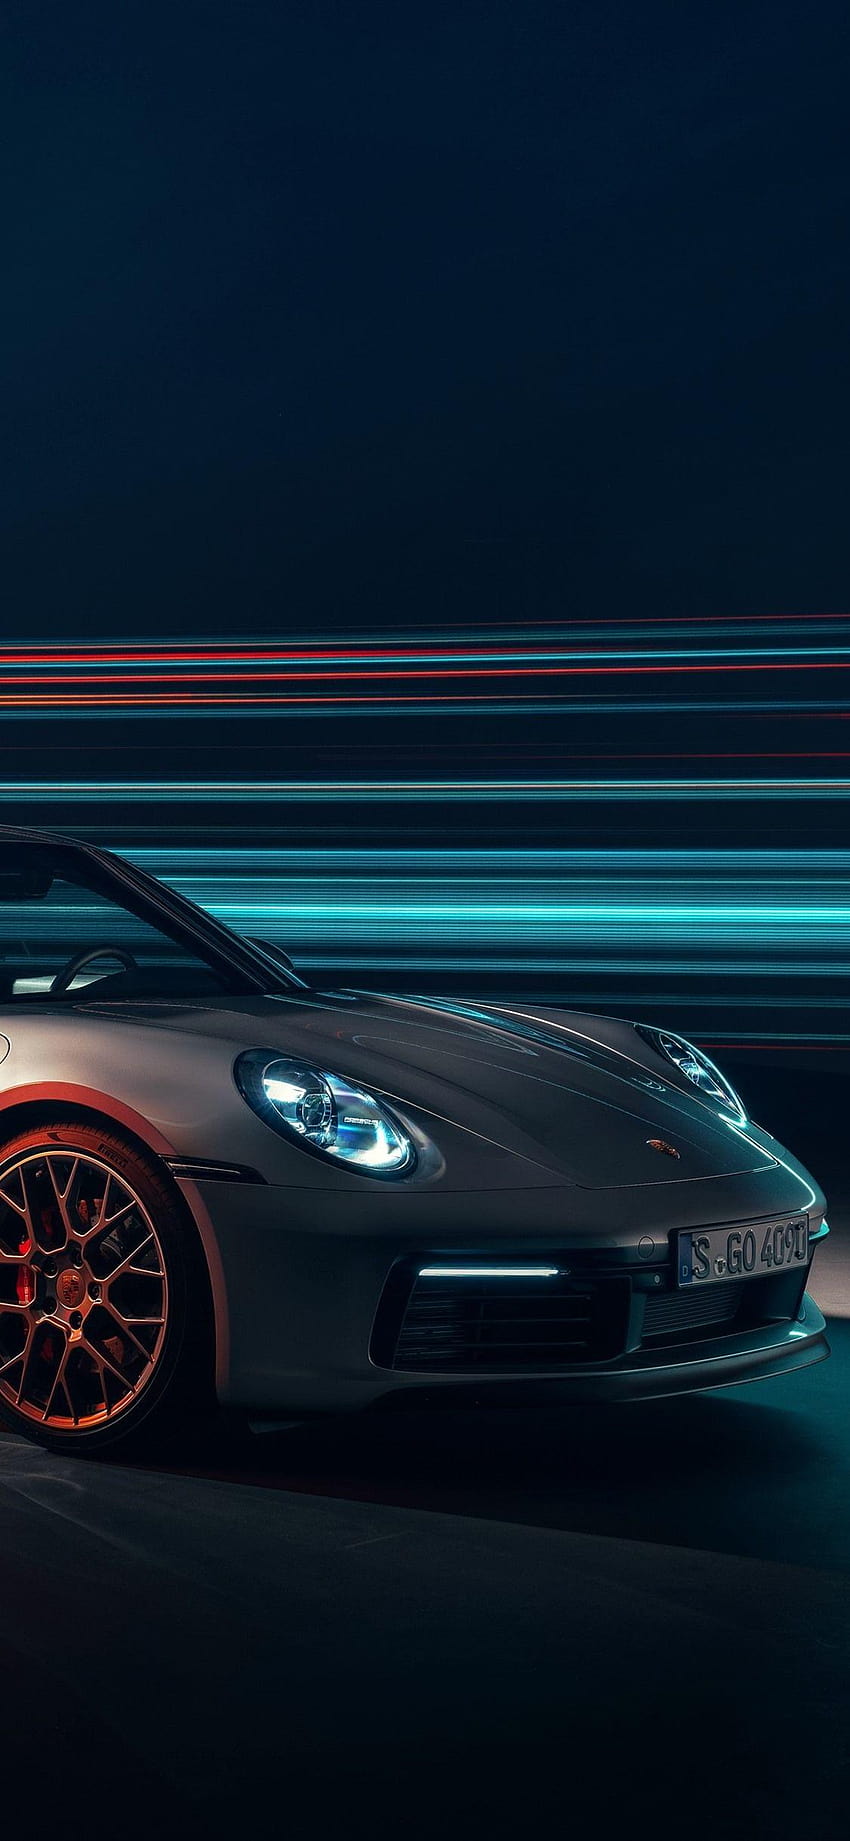 Ngắm nhìn huyền thoại Porsche 911 classic với thiết kế cổ điển và đầy nam tính sẽ đem lại cho bạn những cảm xúc tuyệt vời. Hãy xem hình ảnh để trải nghiệm sự tuyệt vời của chiếc xe này.